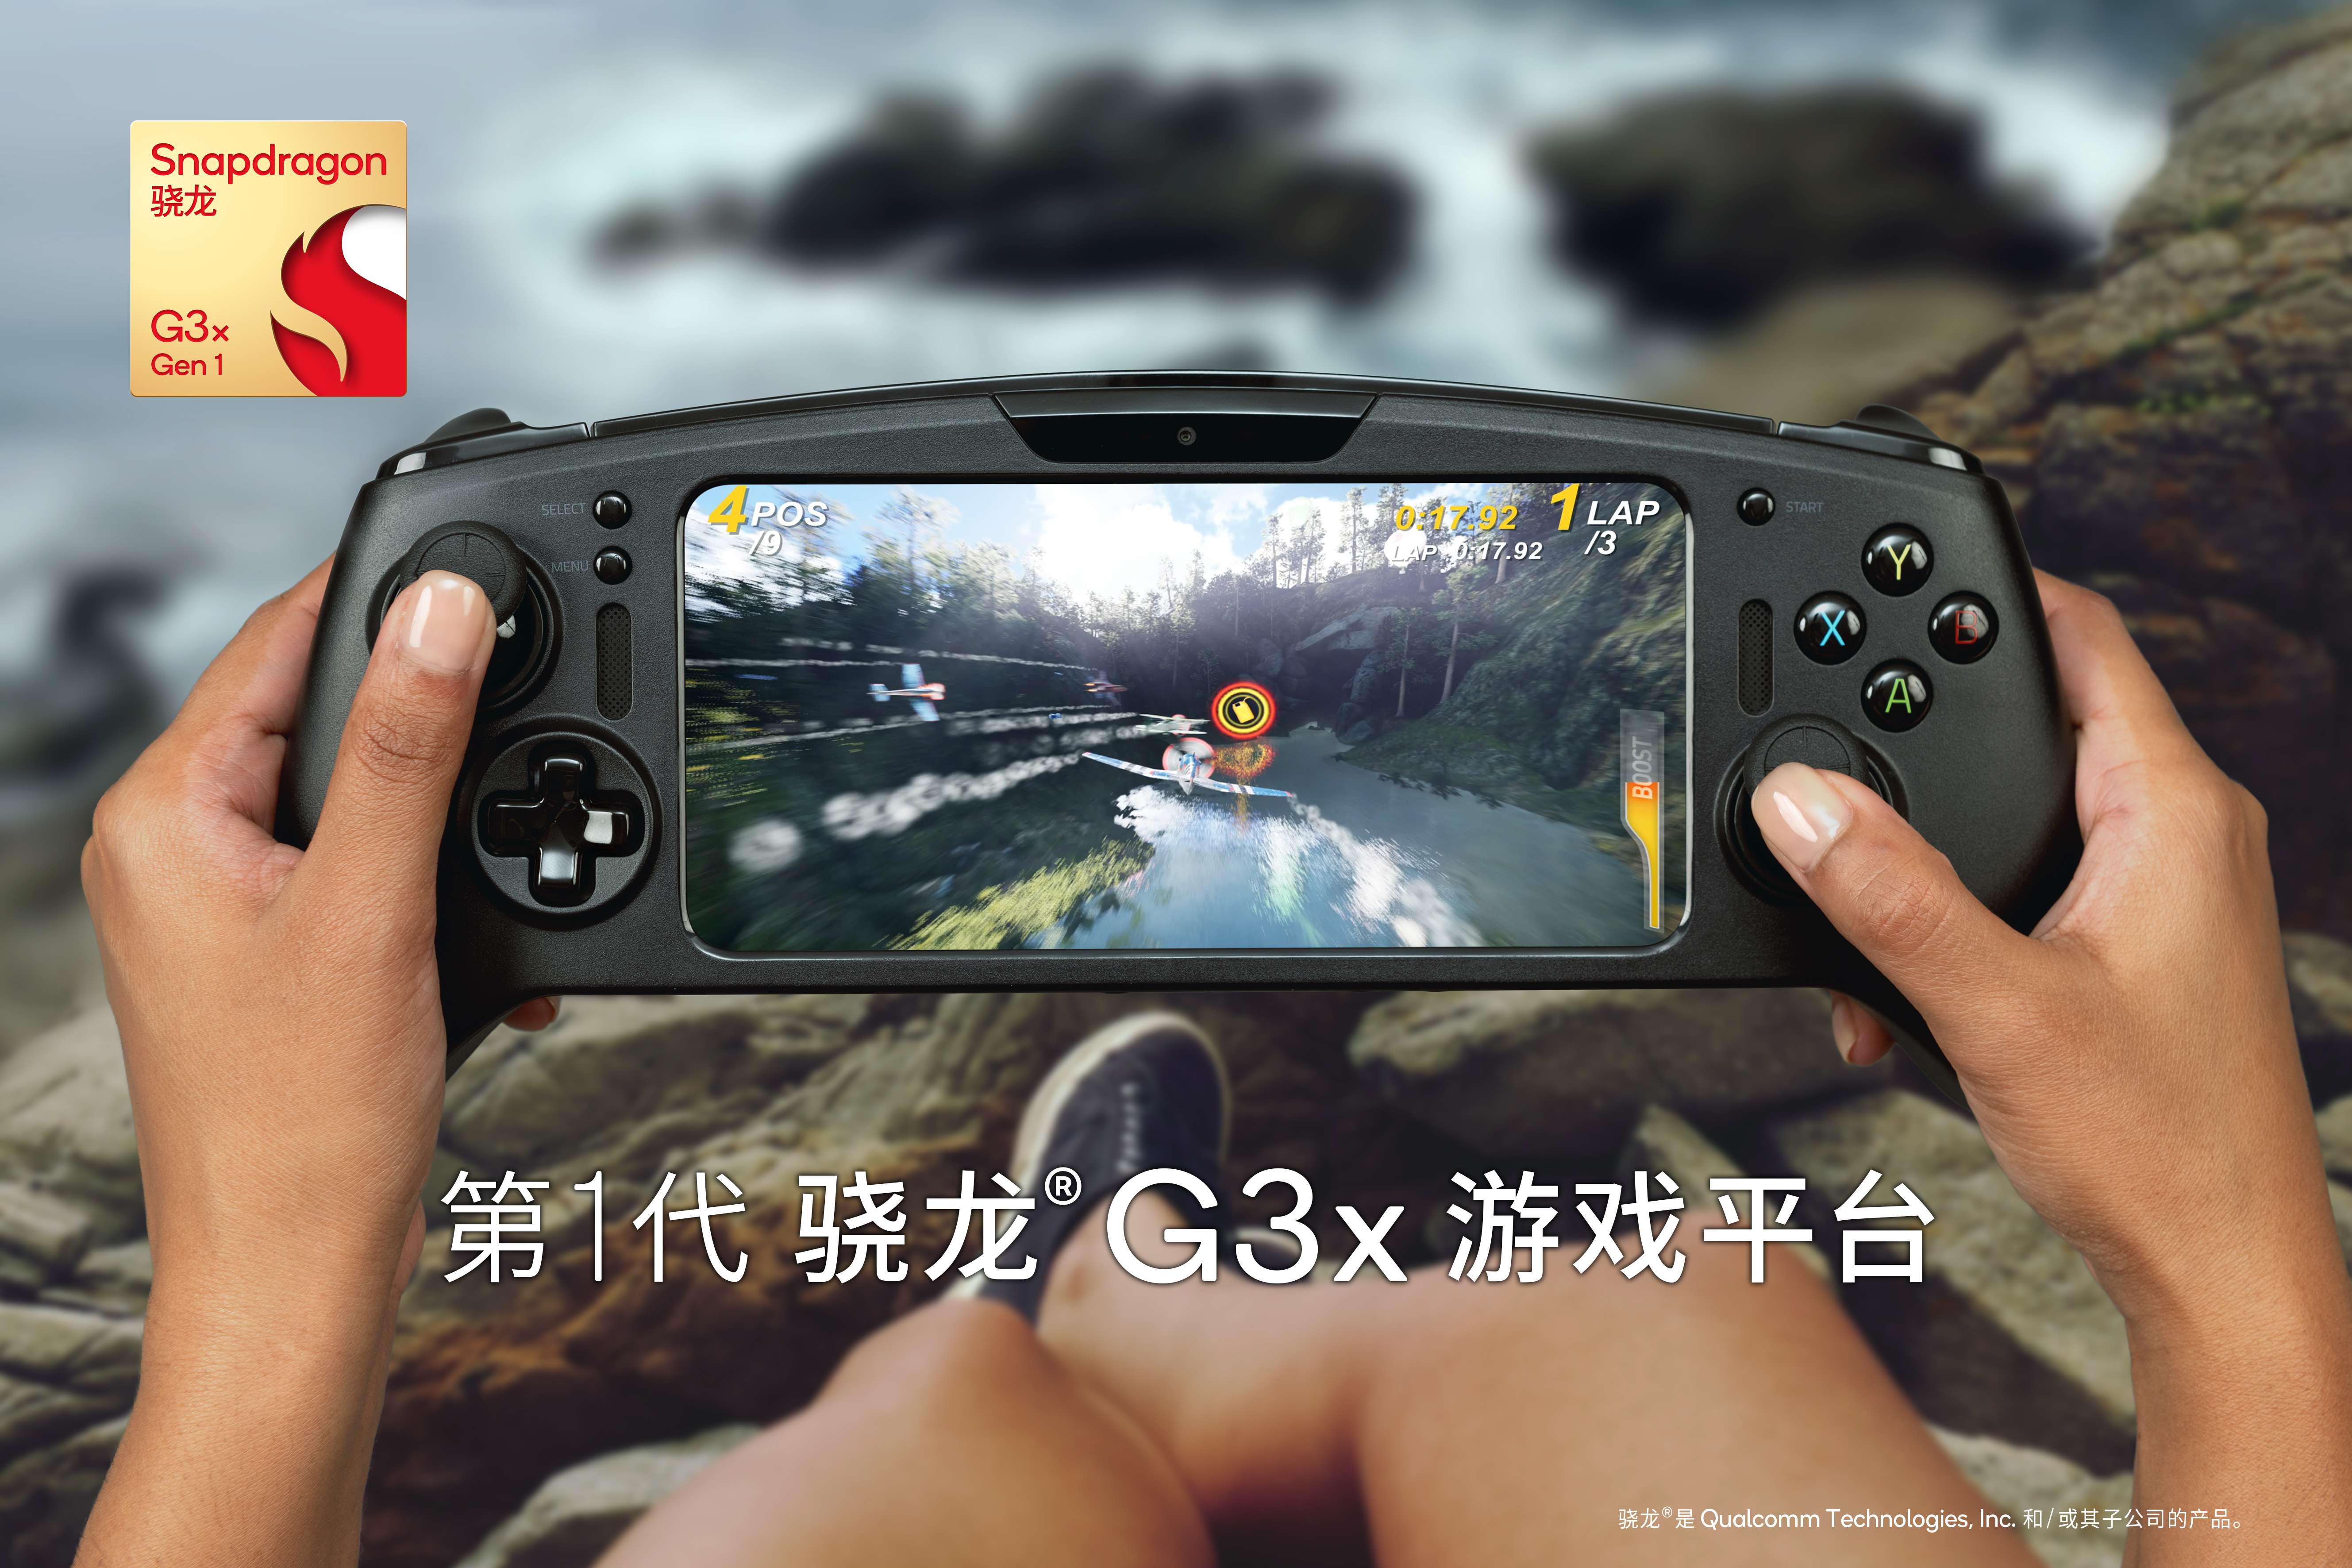 专为游戏掌机打造 高通发布骁龙G3x游戏平台